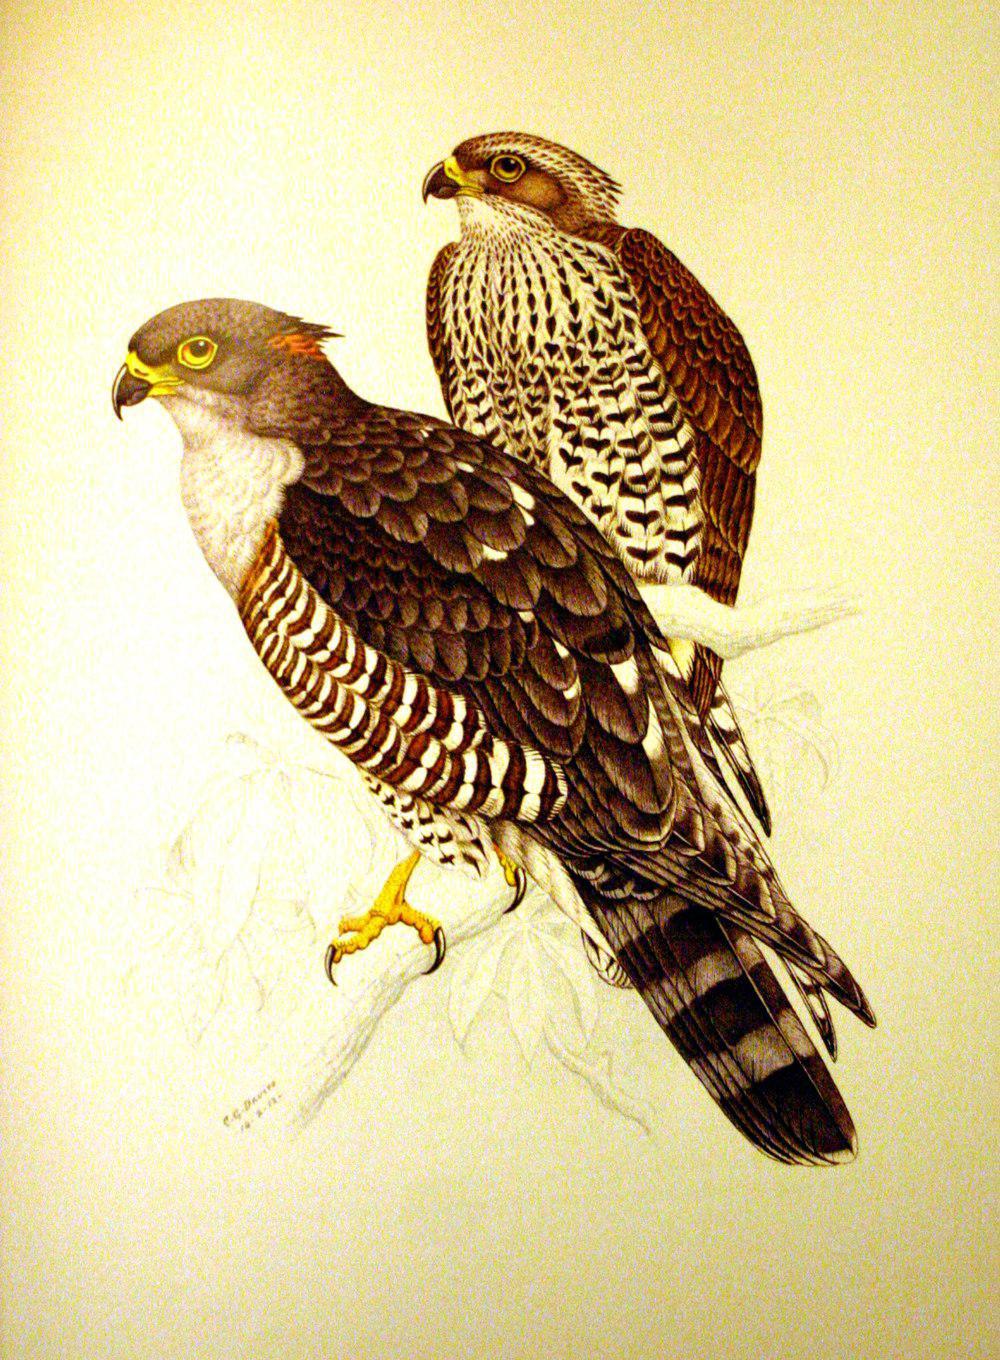 非洲鹃隼 / African Cuckoo-Hawk / Aviceda cuculoides